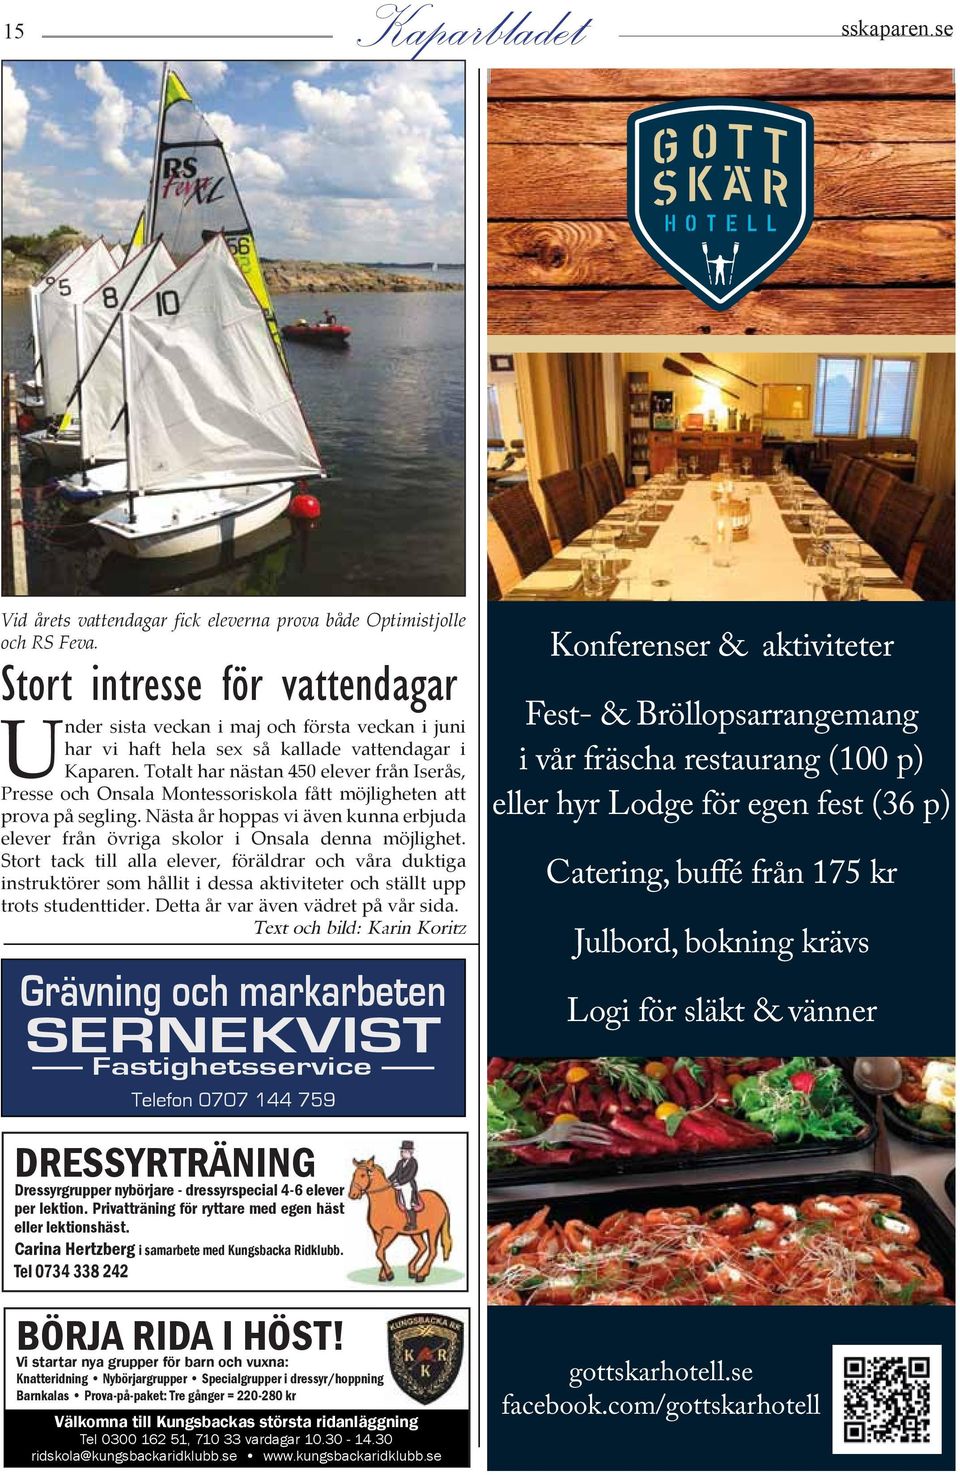 Totalt har nästan 450 elever från Iserås, Presse och Onsala Montessoriskola fått möjligheten att prova på segling.